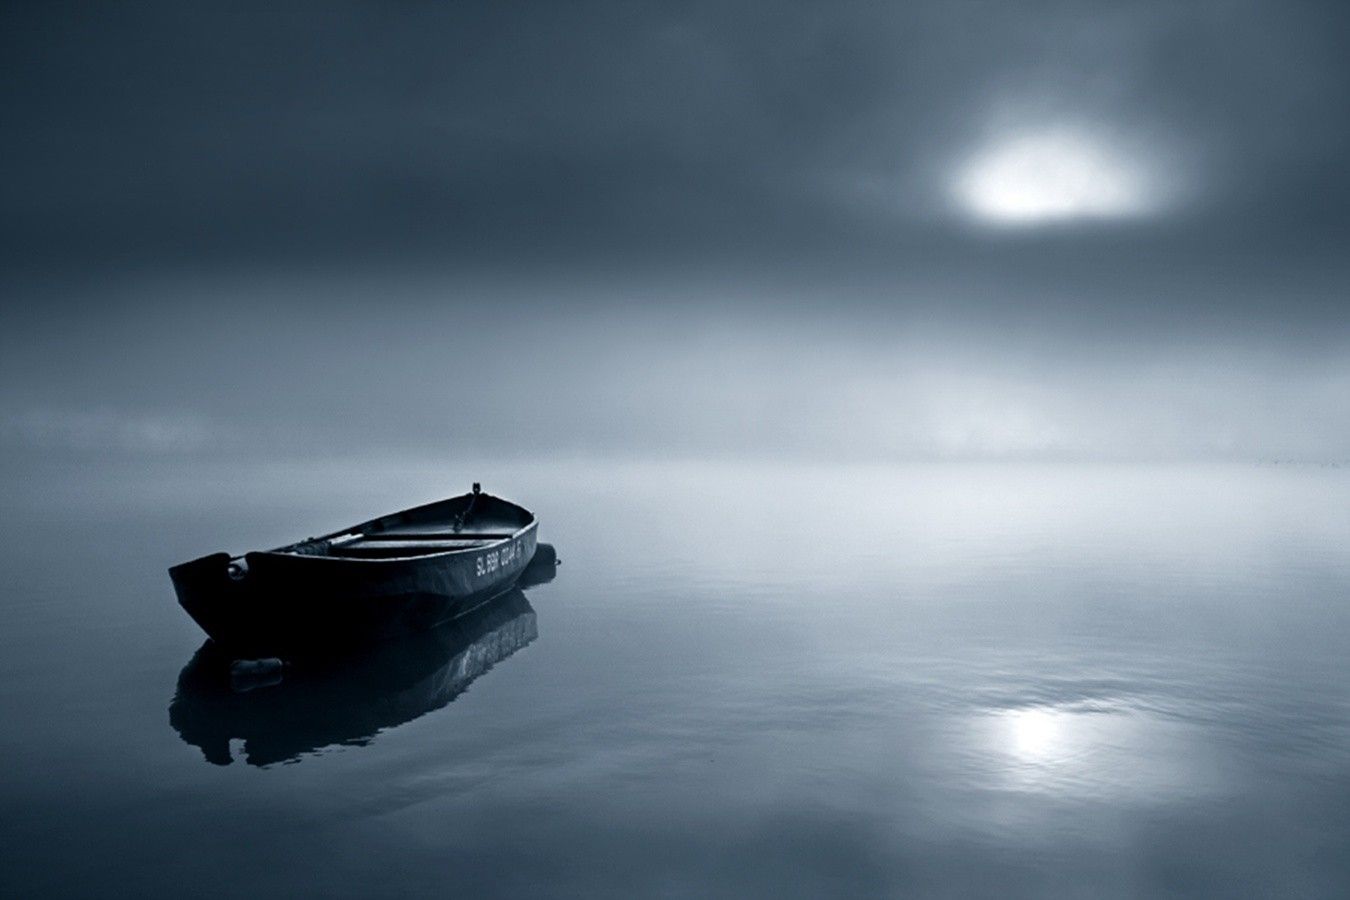 Boat On Lake At Night - 1350x900 Wallpaper 